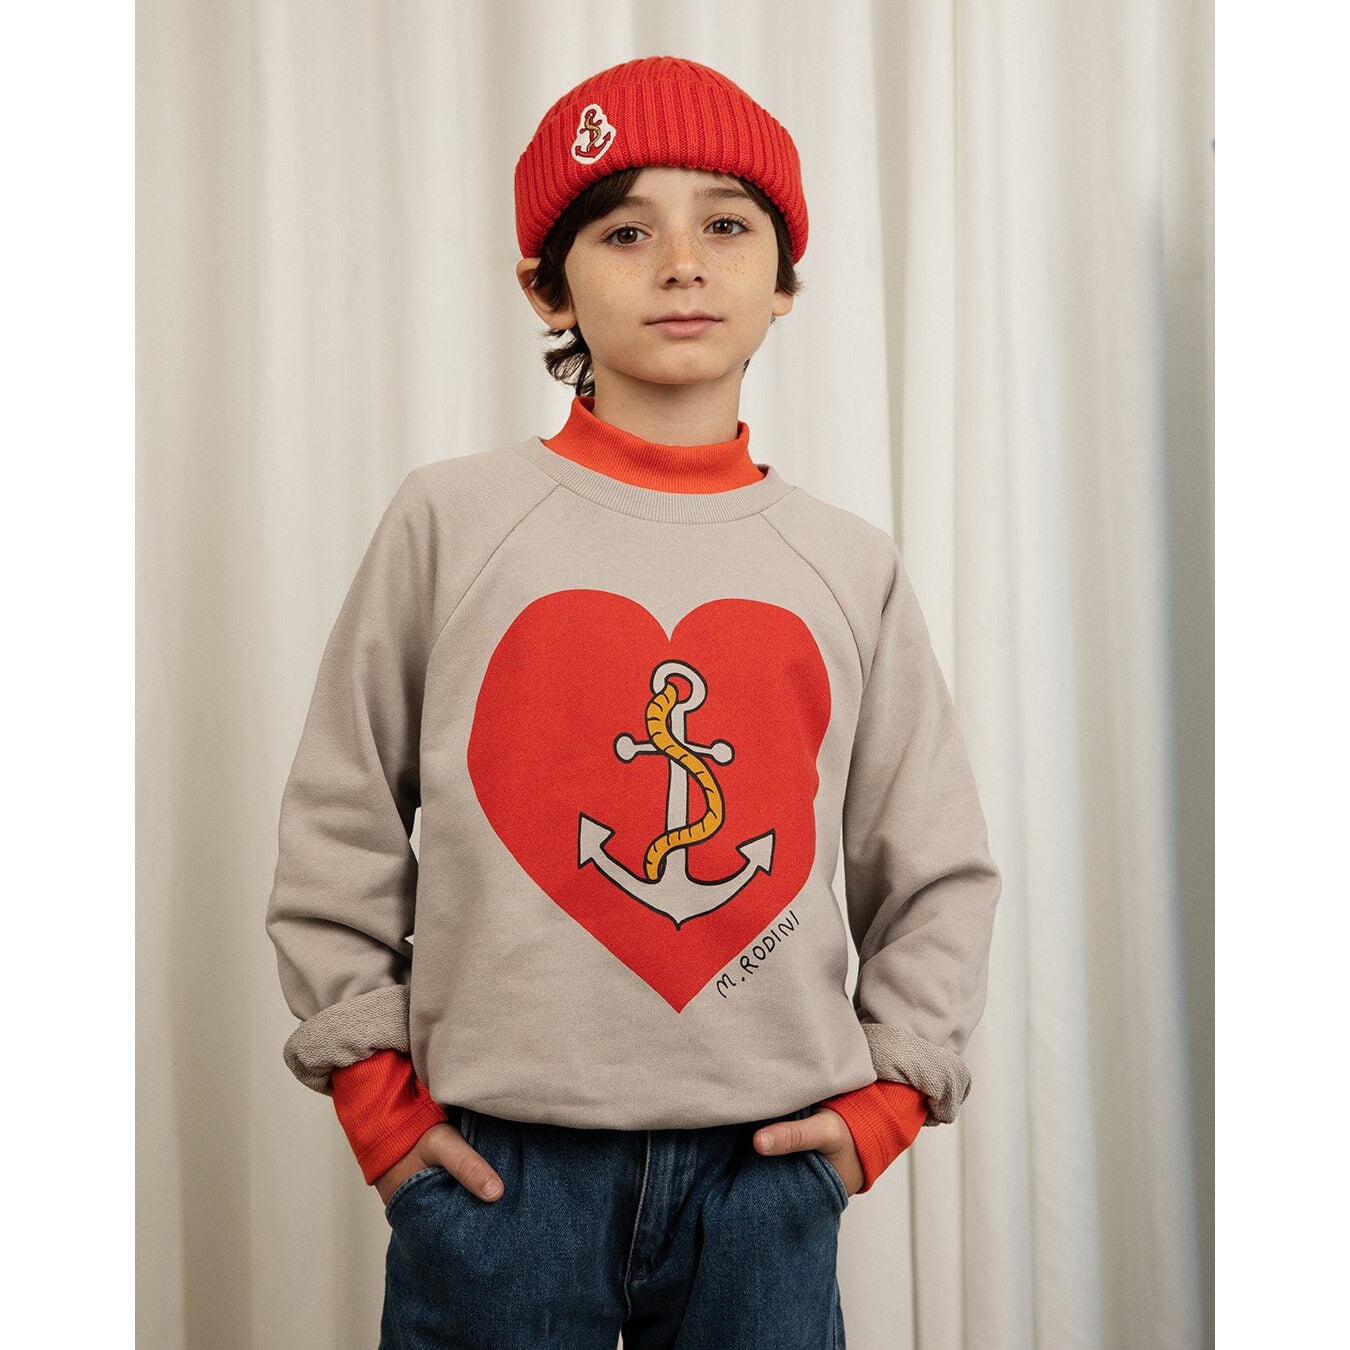 Sailors Heart Sp Sweatshirt